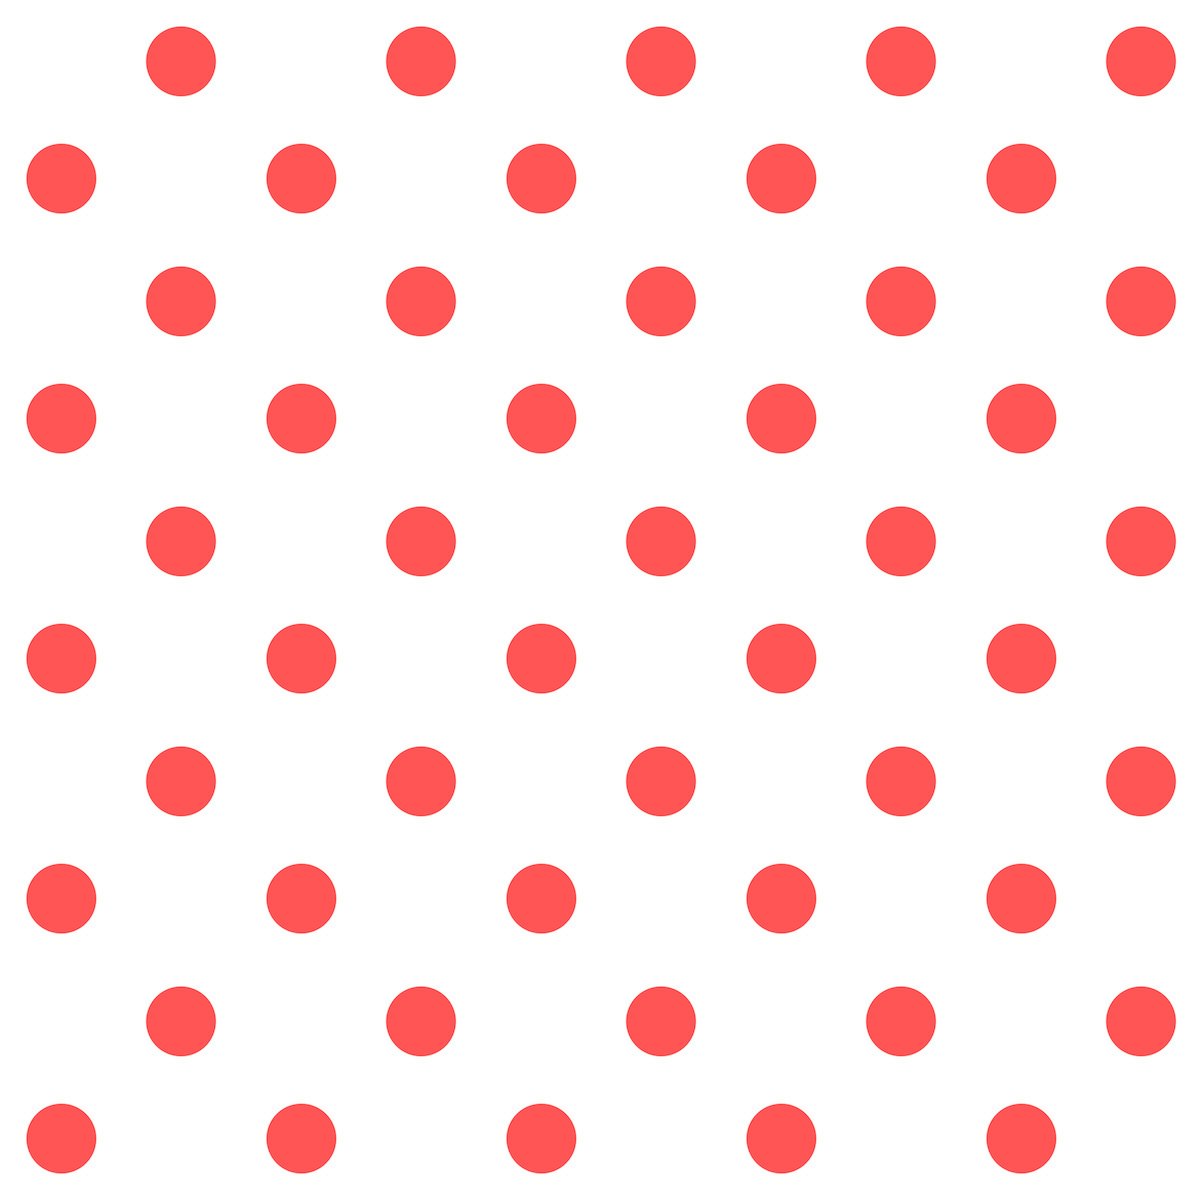 Patterns, Polka dots and Polka dot patterns